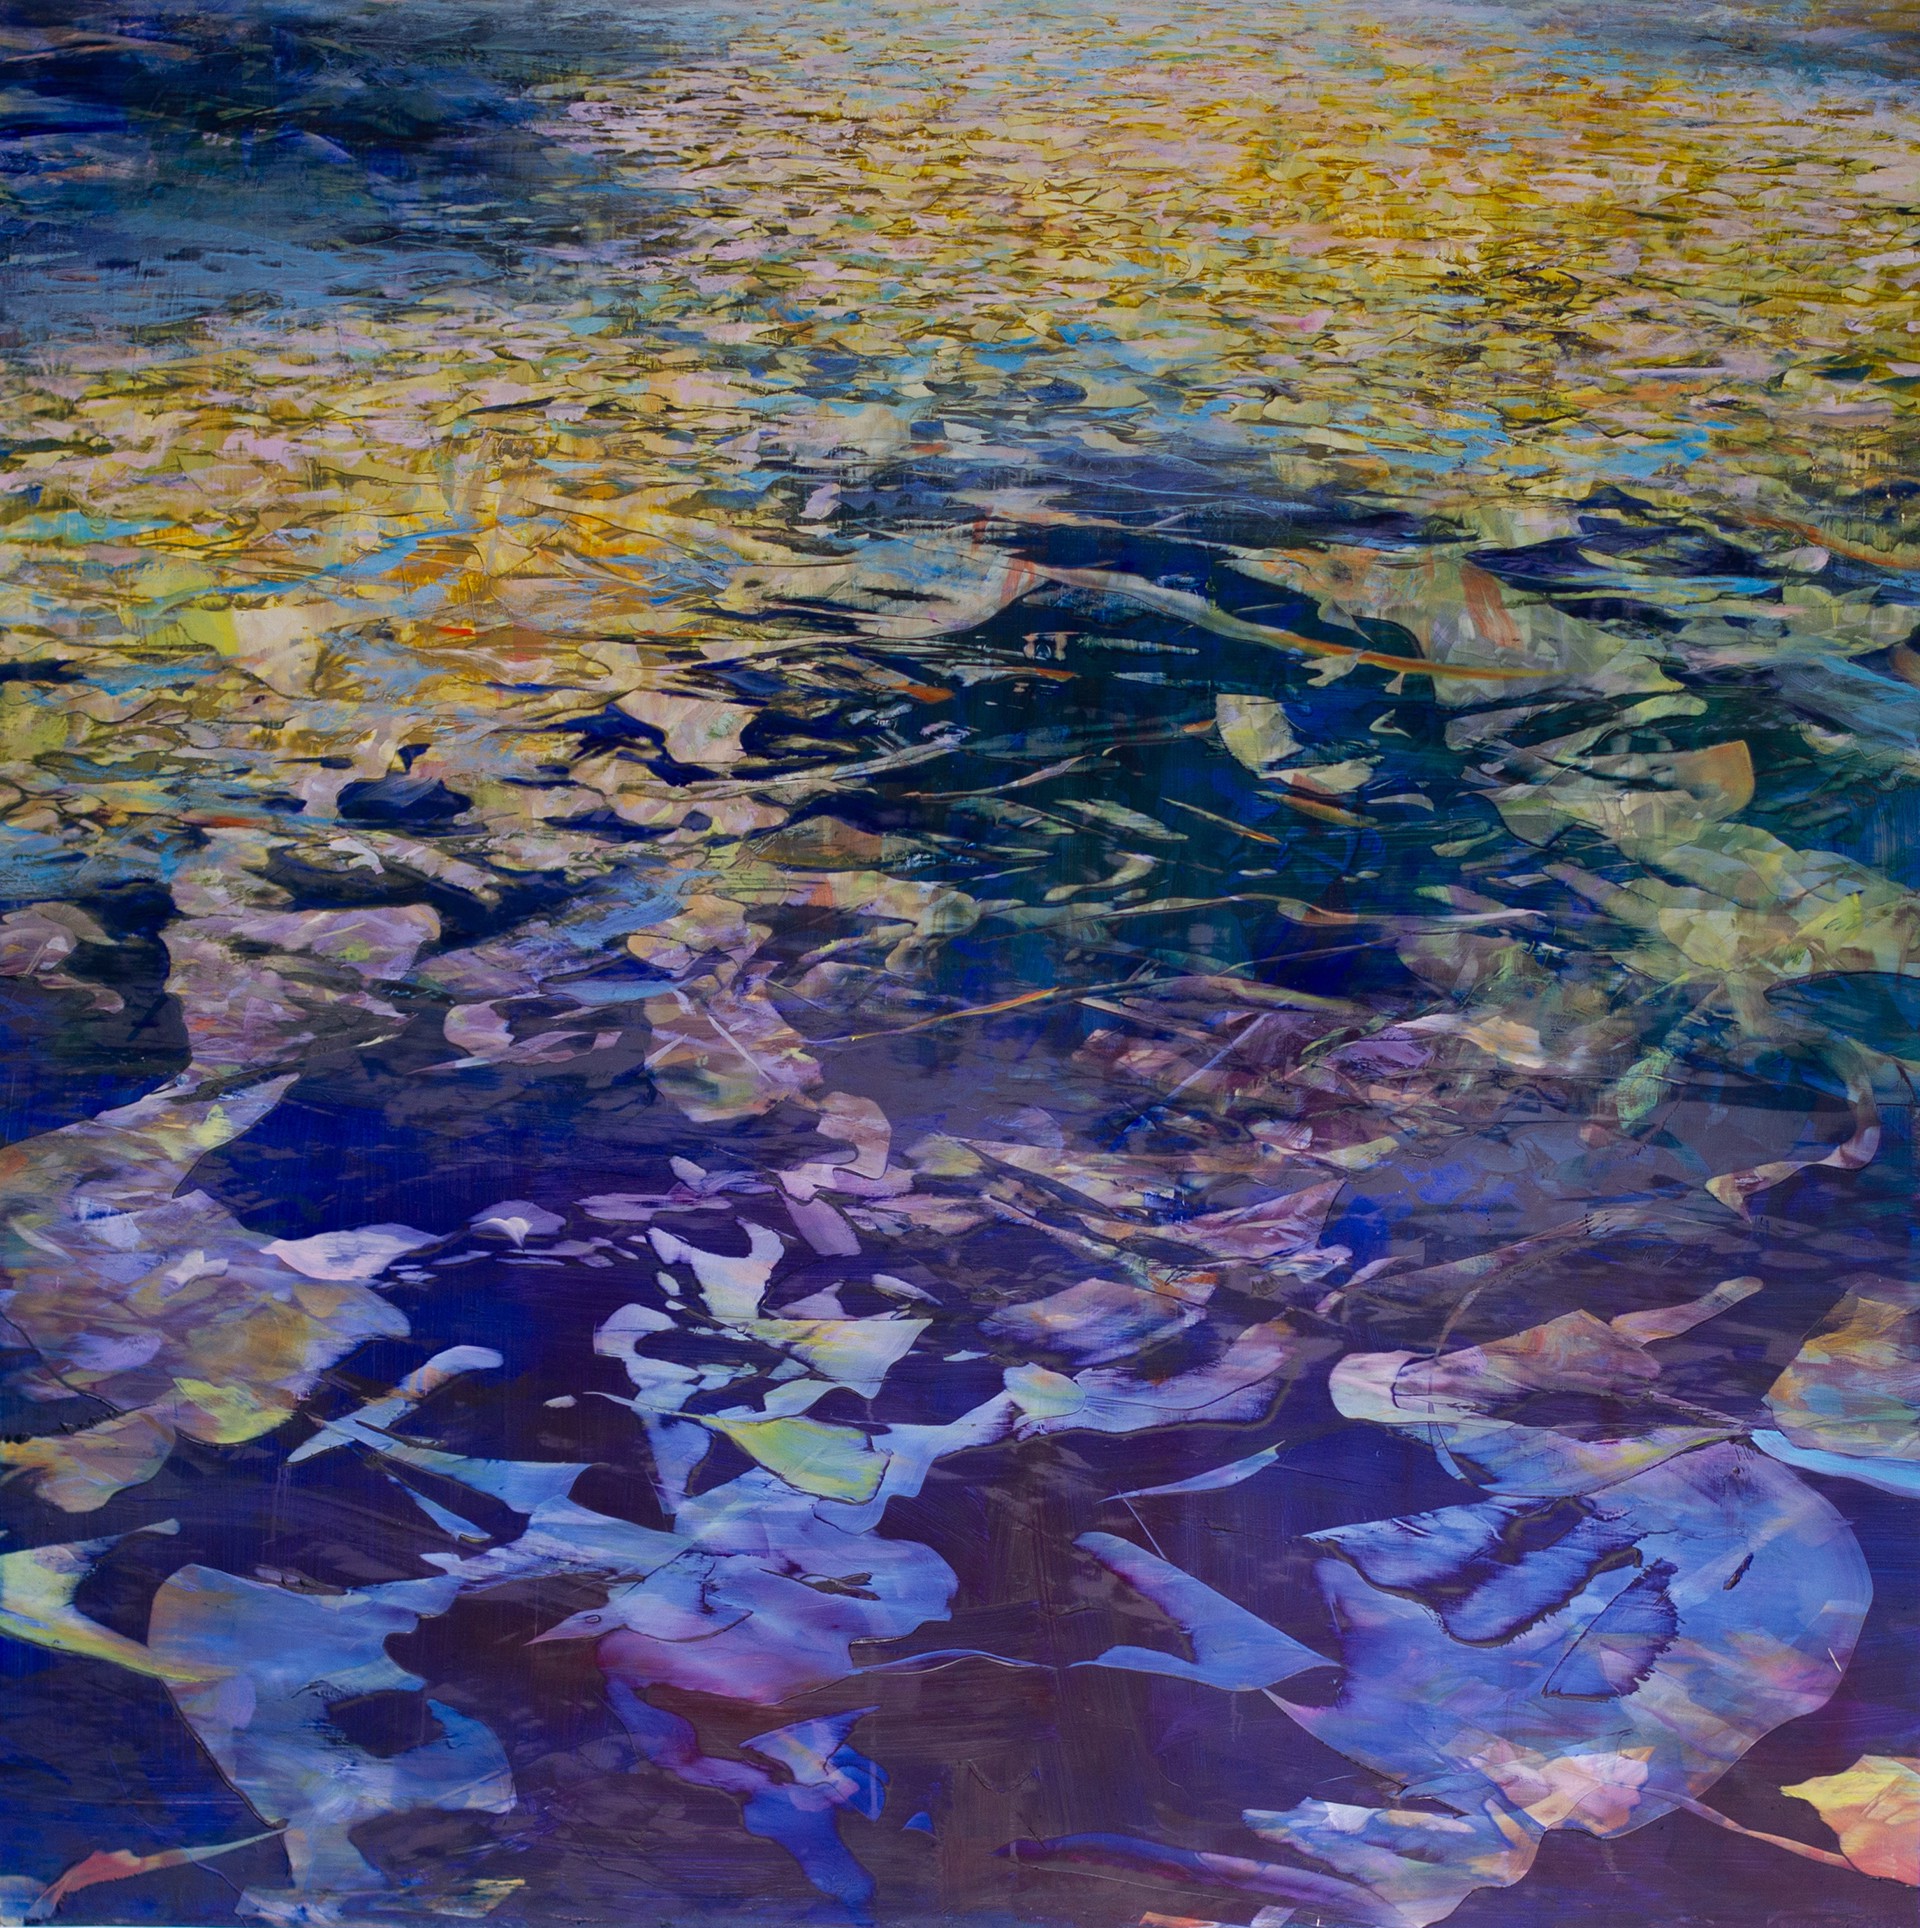 Fall Mosaic by David Allen Dunlop